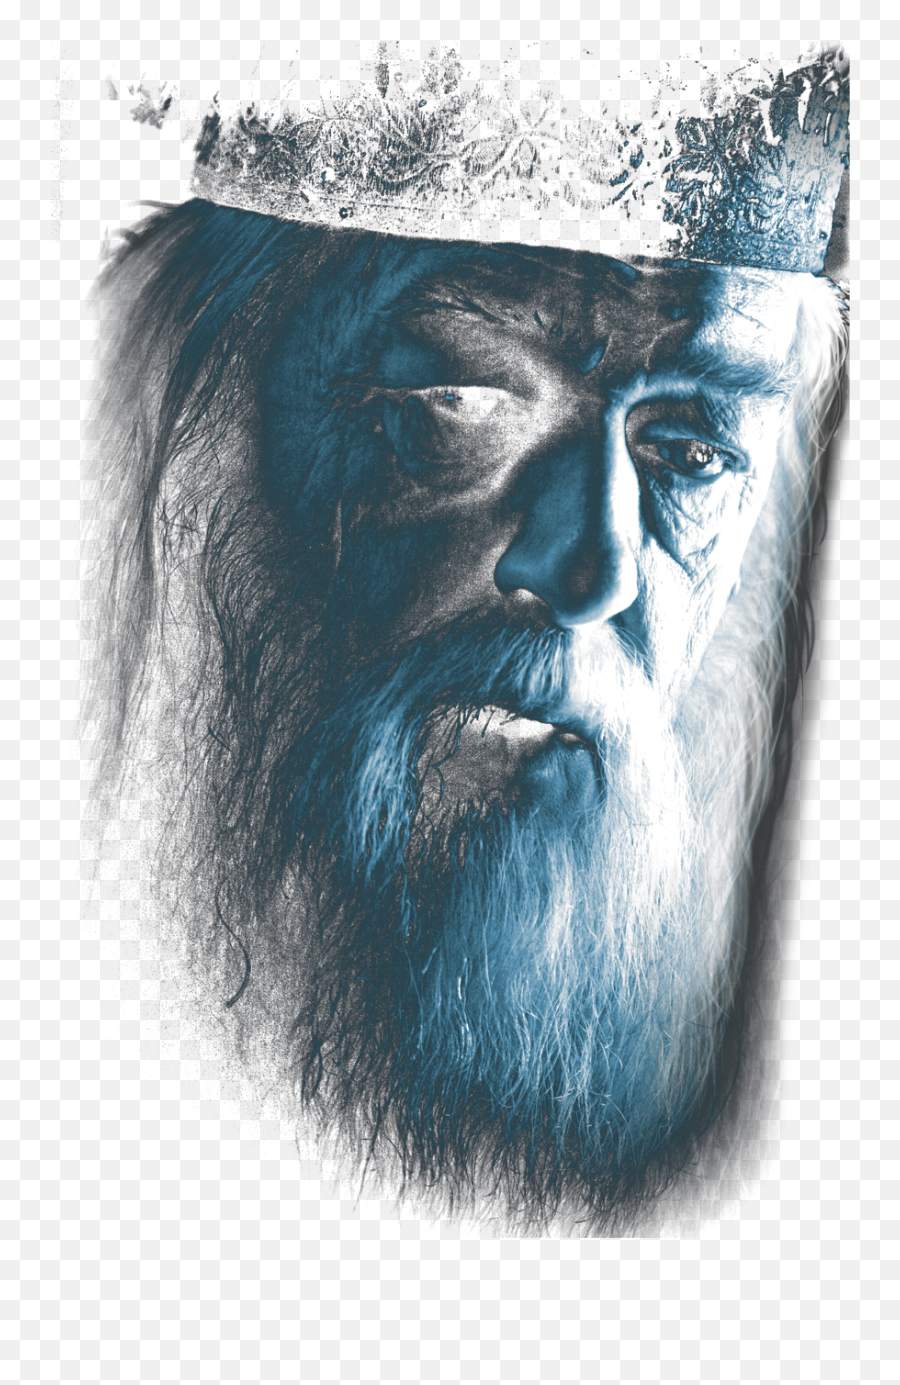 Harry Potter Dumbledore Face - Albus Dumbledore Png,Dumbledore Png